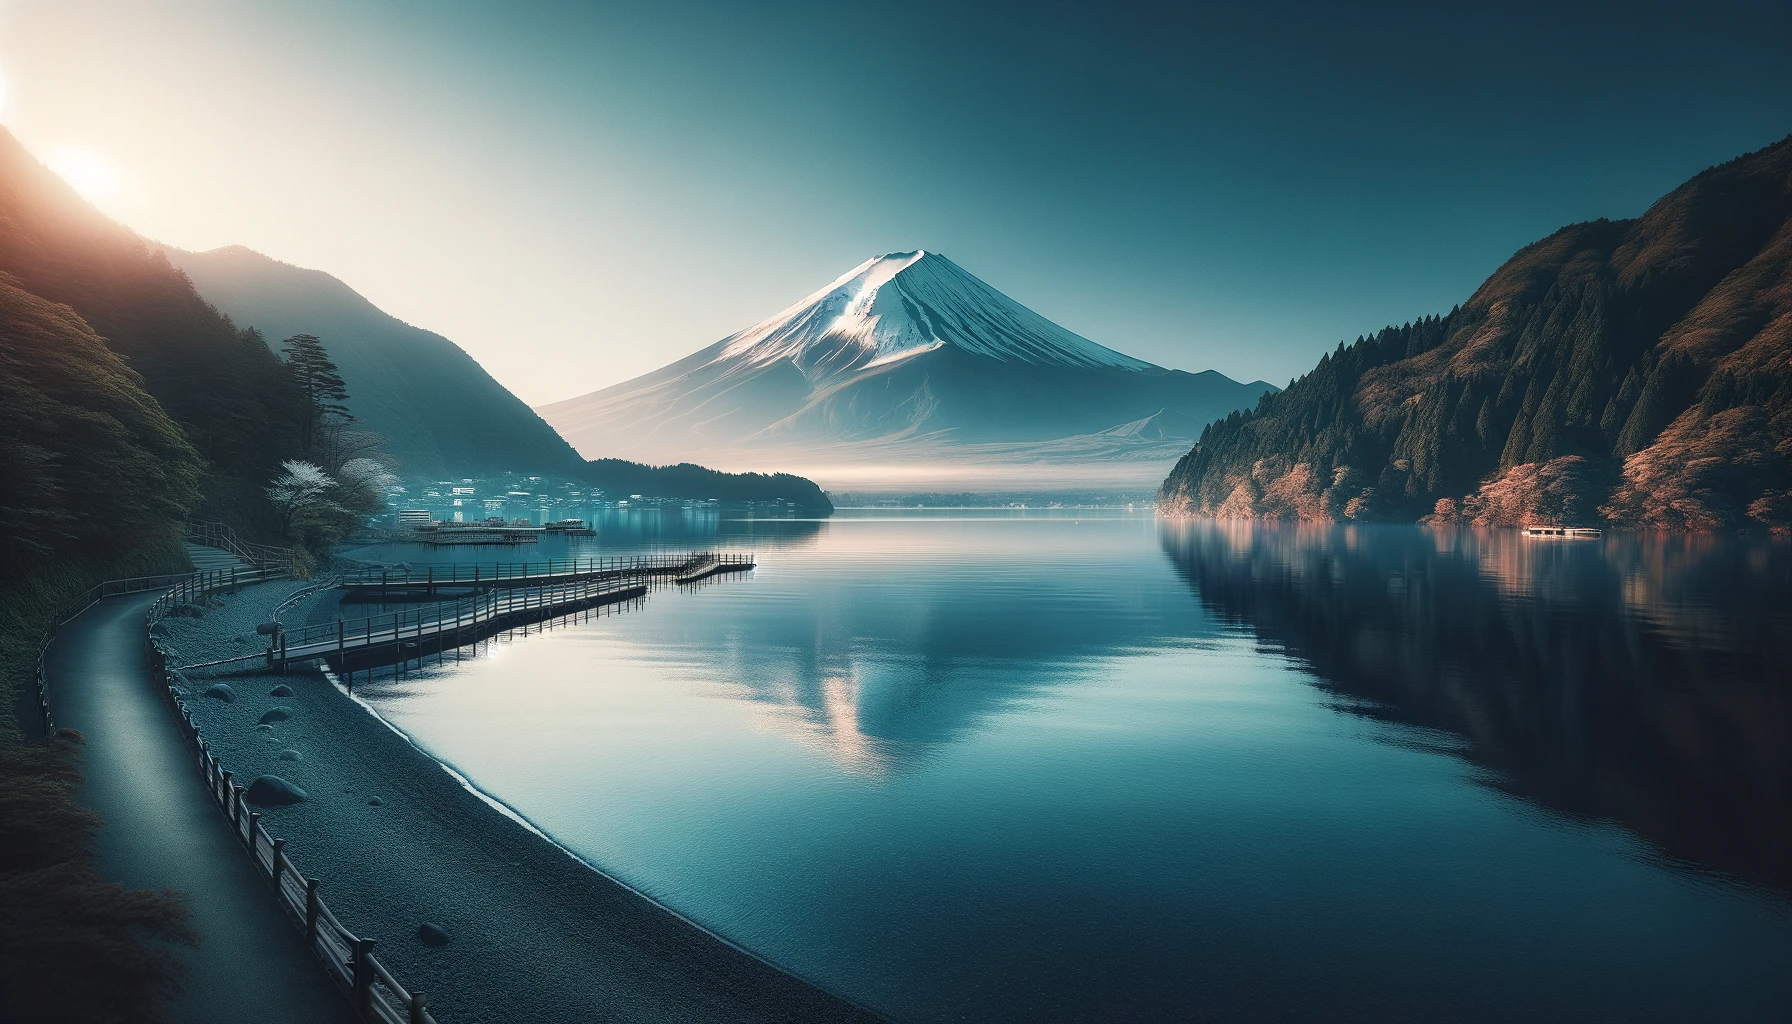 富士山の影で自己発見: 芦ノ湖からの内省と決断